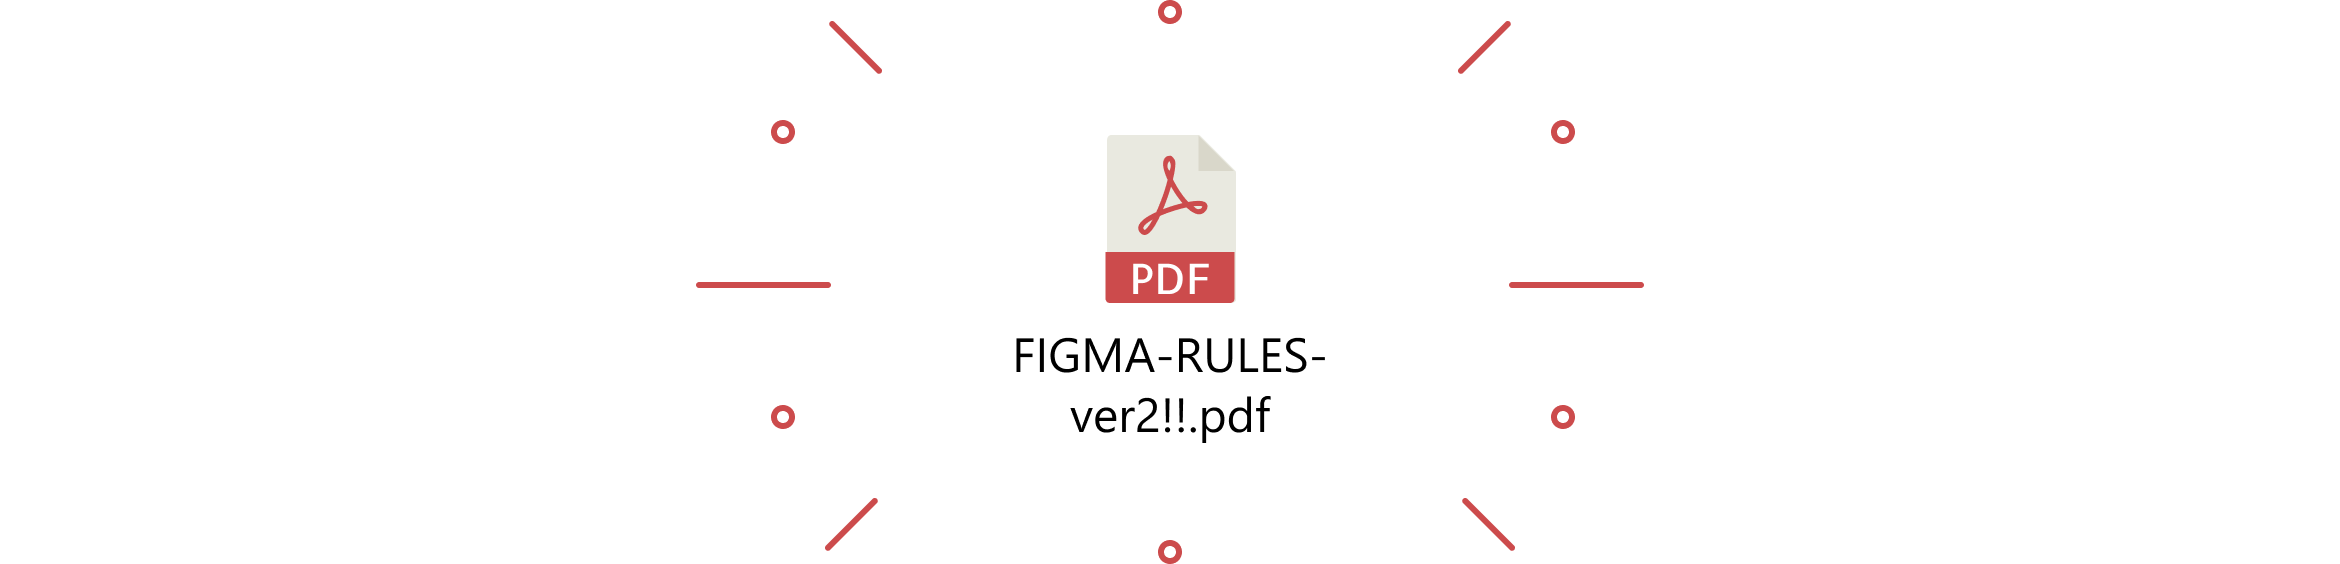 Правила подготовки макетов в Figma - 2